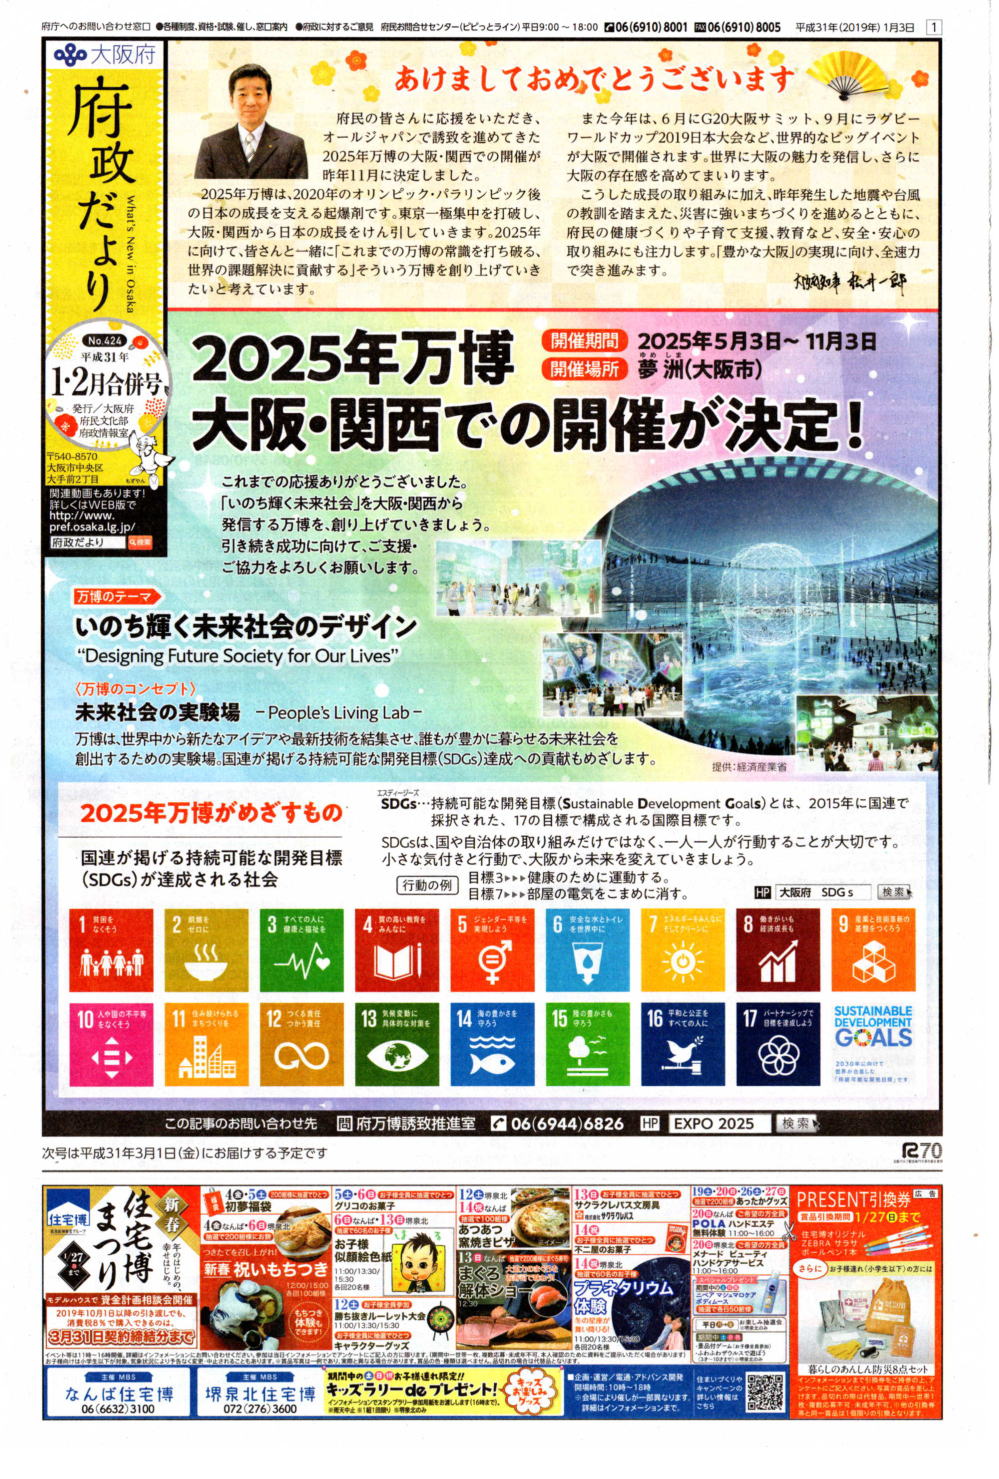 府政だよりH31年1・2月号万博開催決定紹介画面

2025年万博　大阪・関西での開催が決定！
万博のテーマ　いのち輝く未来社会のデザイン
万博のコンセプト　未来社会の実験場<BR>
2025年万博がめざすもの　国連が掲げる持続可能な開発目標(SDGs)が達成される社会　
　